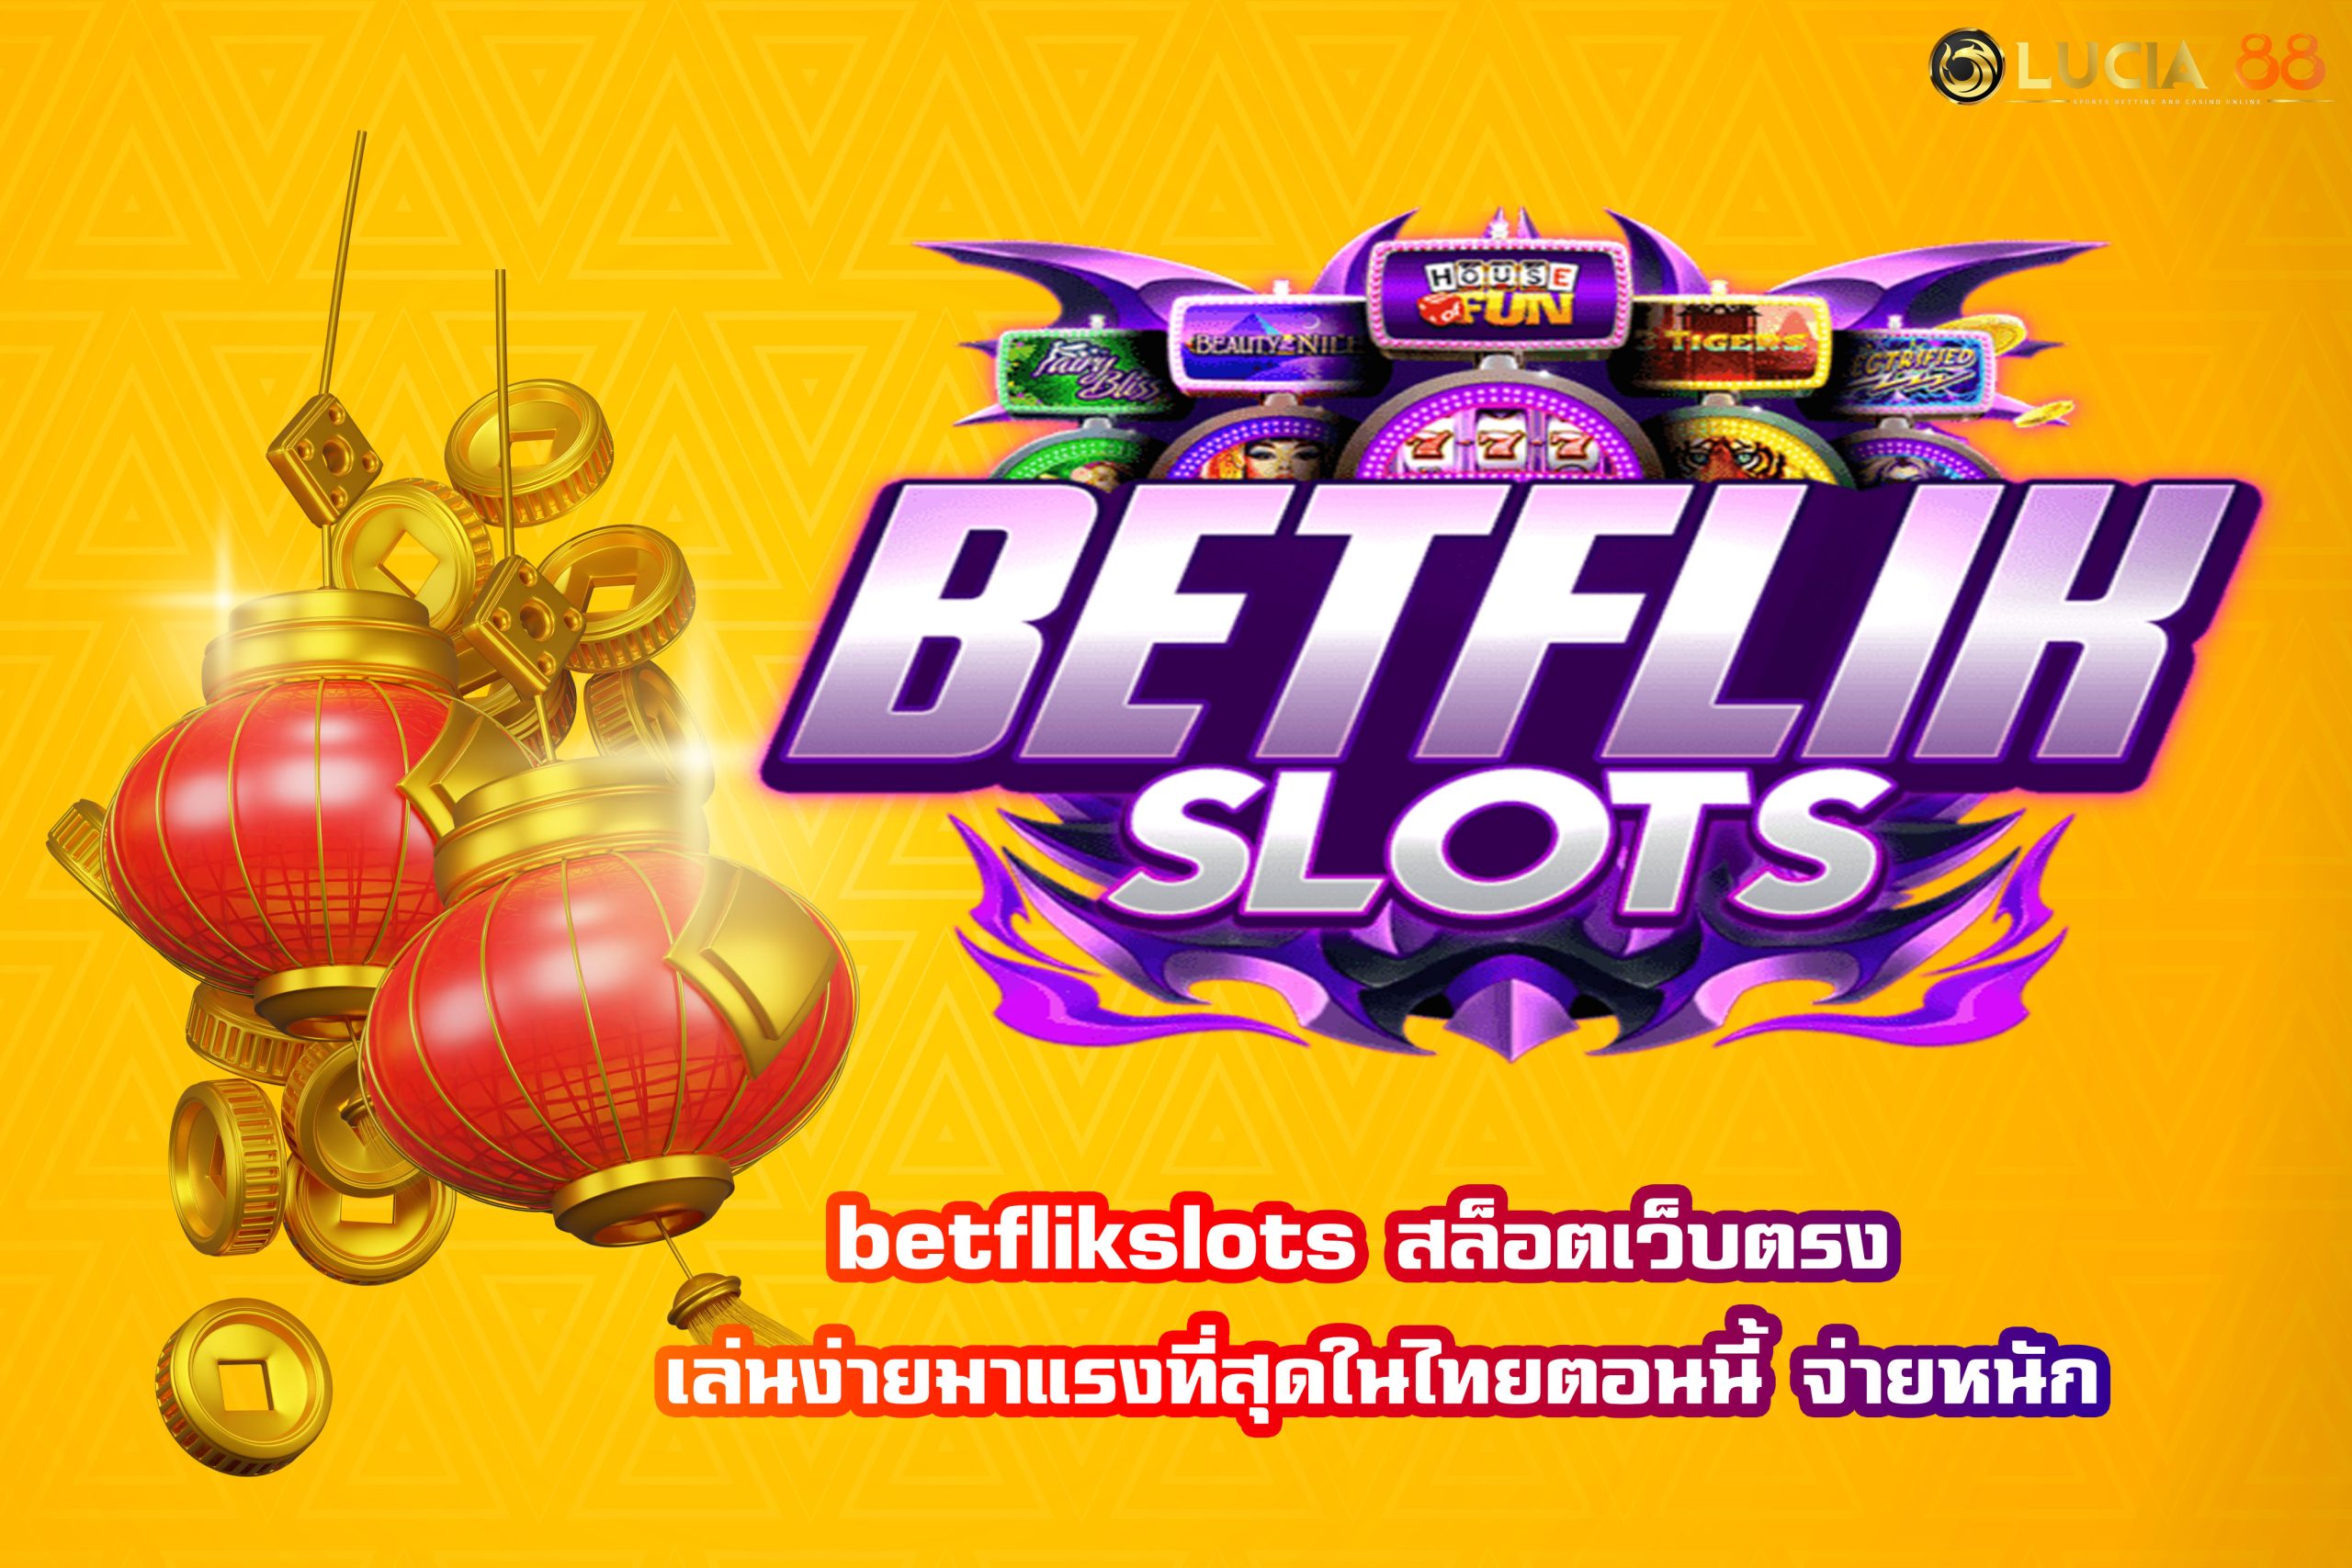 betflik slots สล็อตเว็บตรง เล่นง่ายมาแรงที่สุดในไทยตอนนี้ จ่ายหนัก